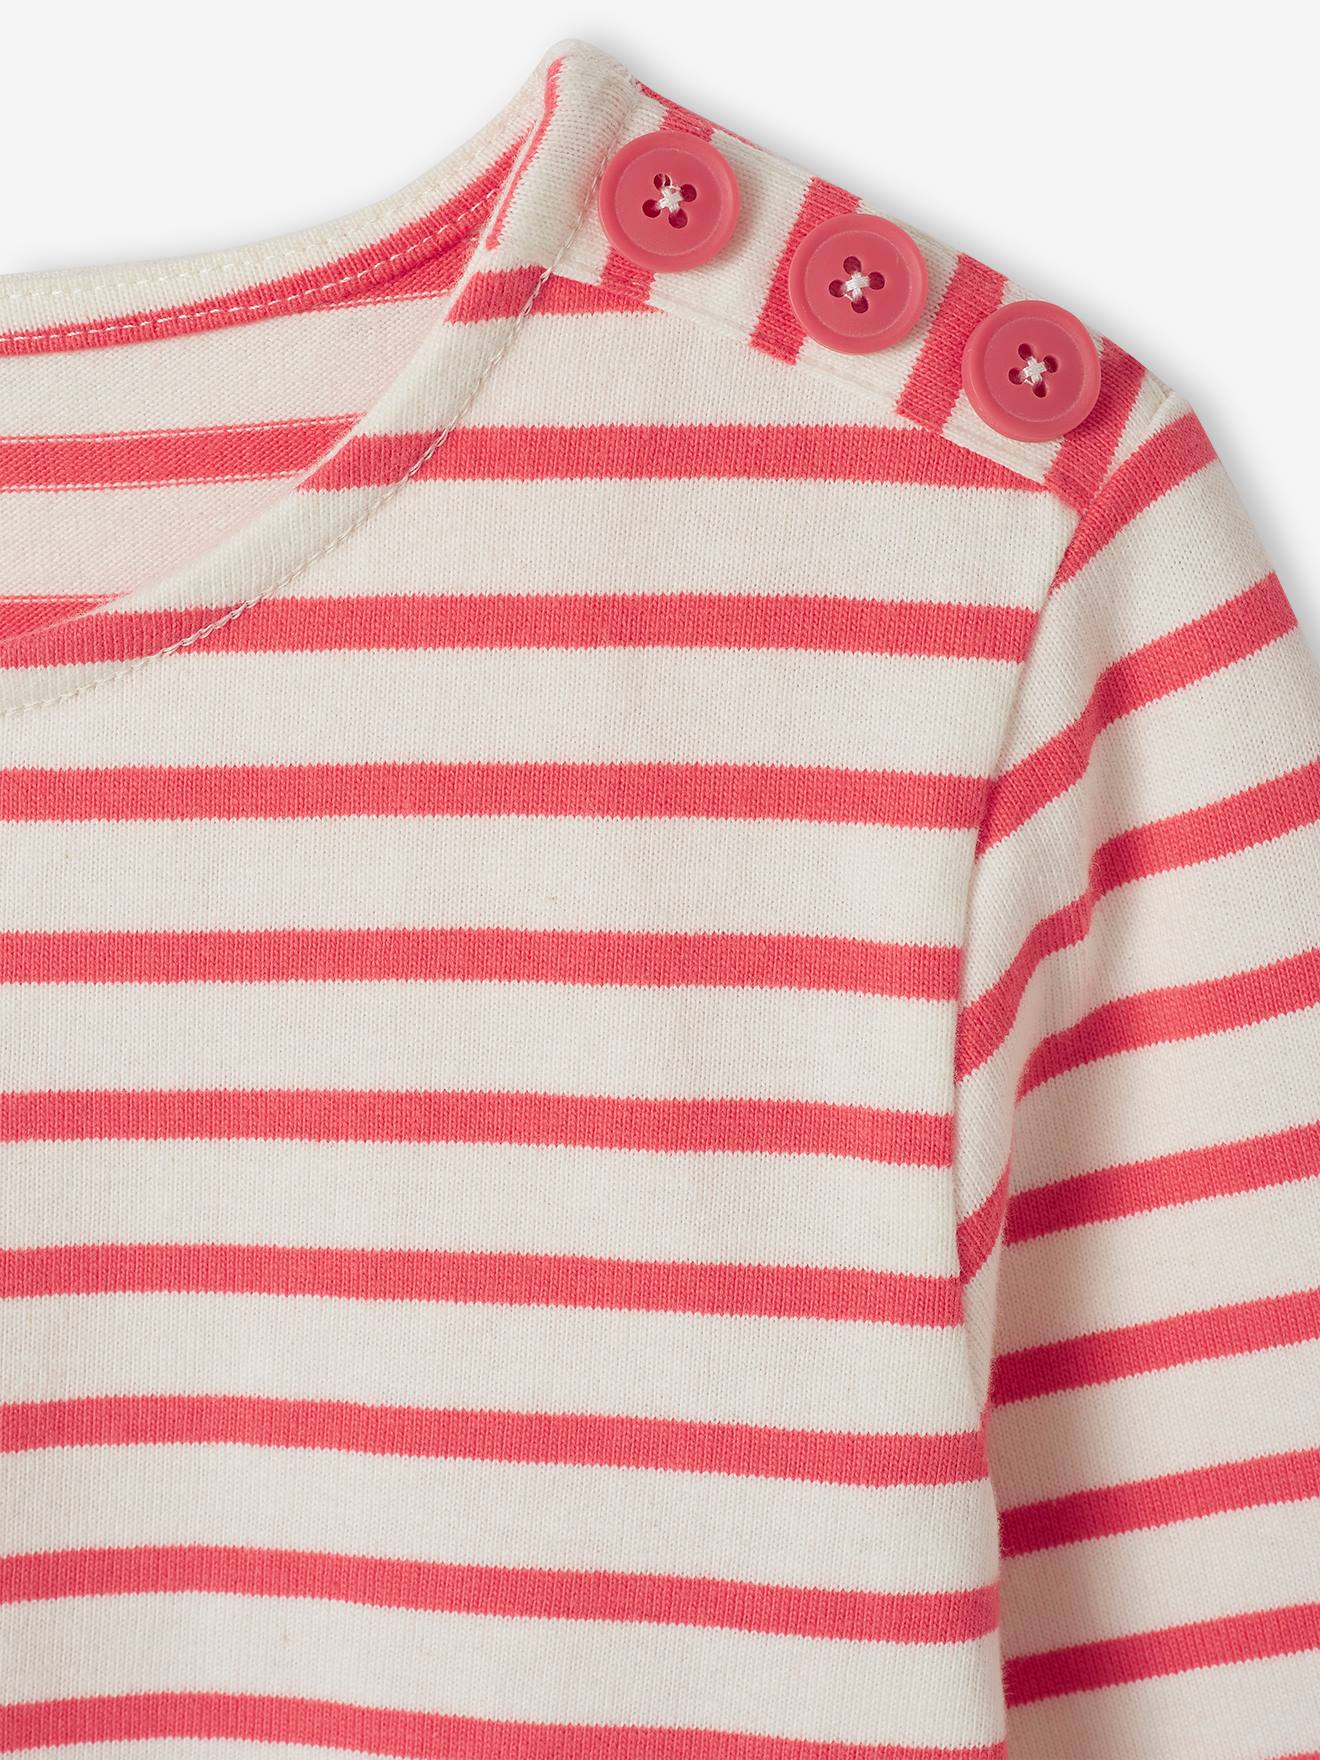 Camiseta Marinera Rojo y Blanco - Una Caja de Botones